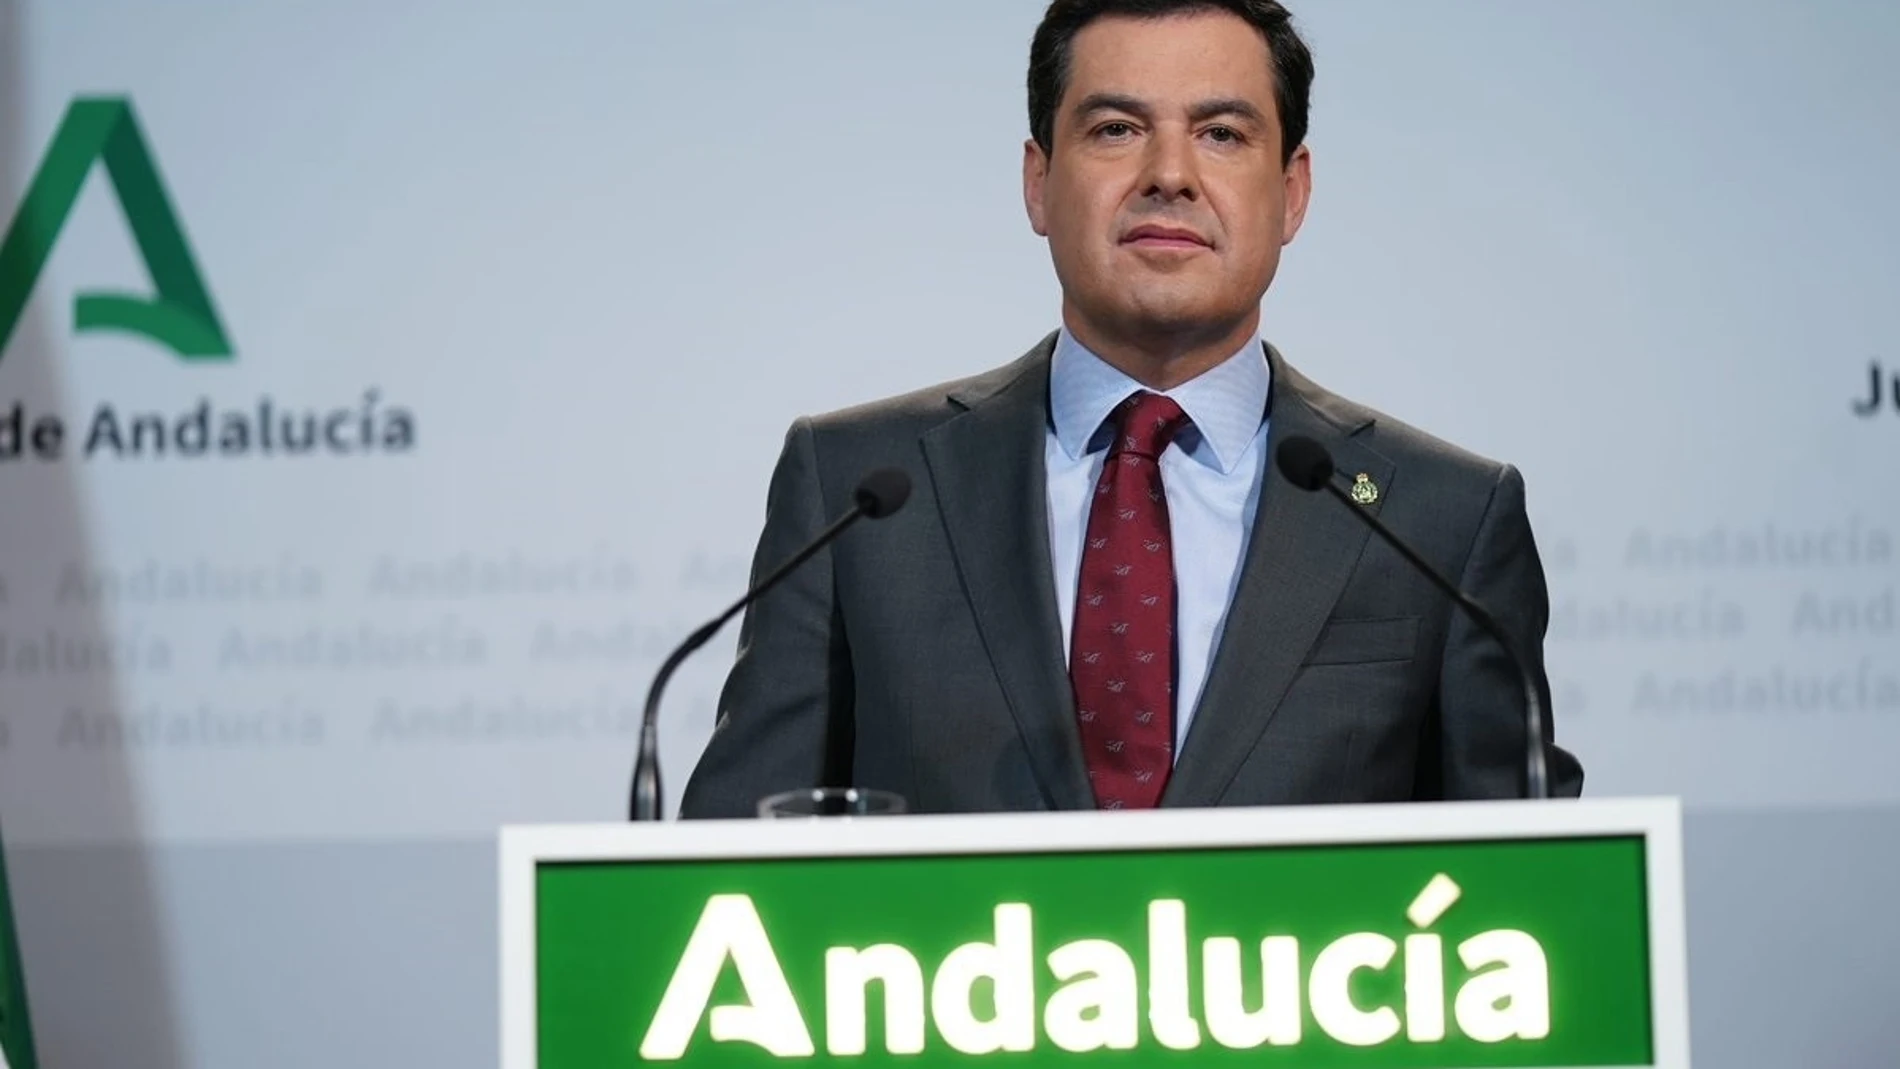 El presidente de la Junta de Andalucía, Juanma Moreno, compareció ayer tras el gabinete de crisis